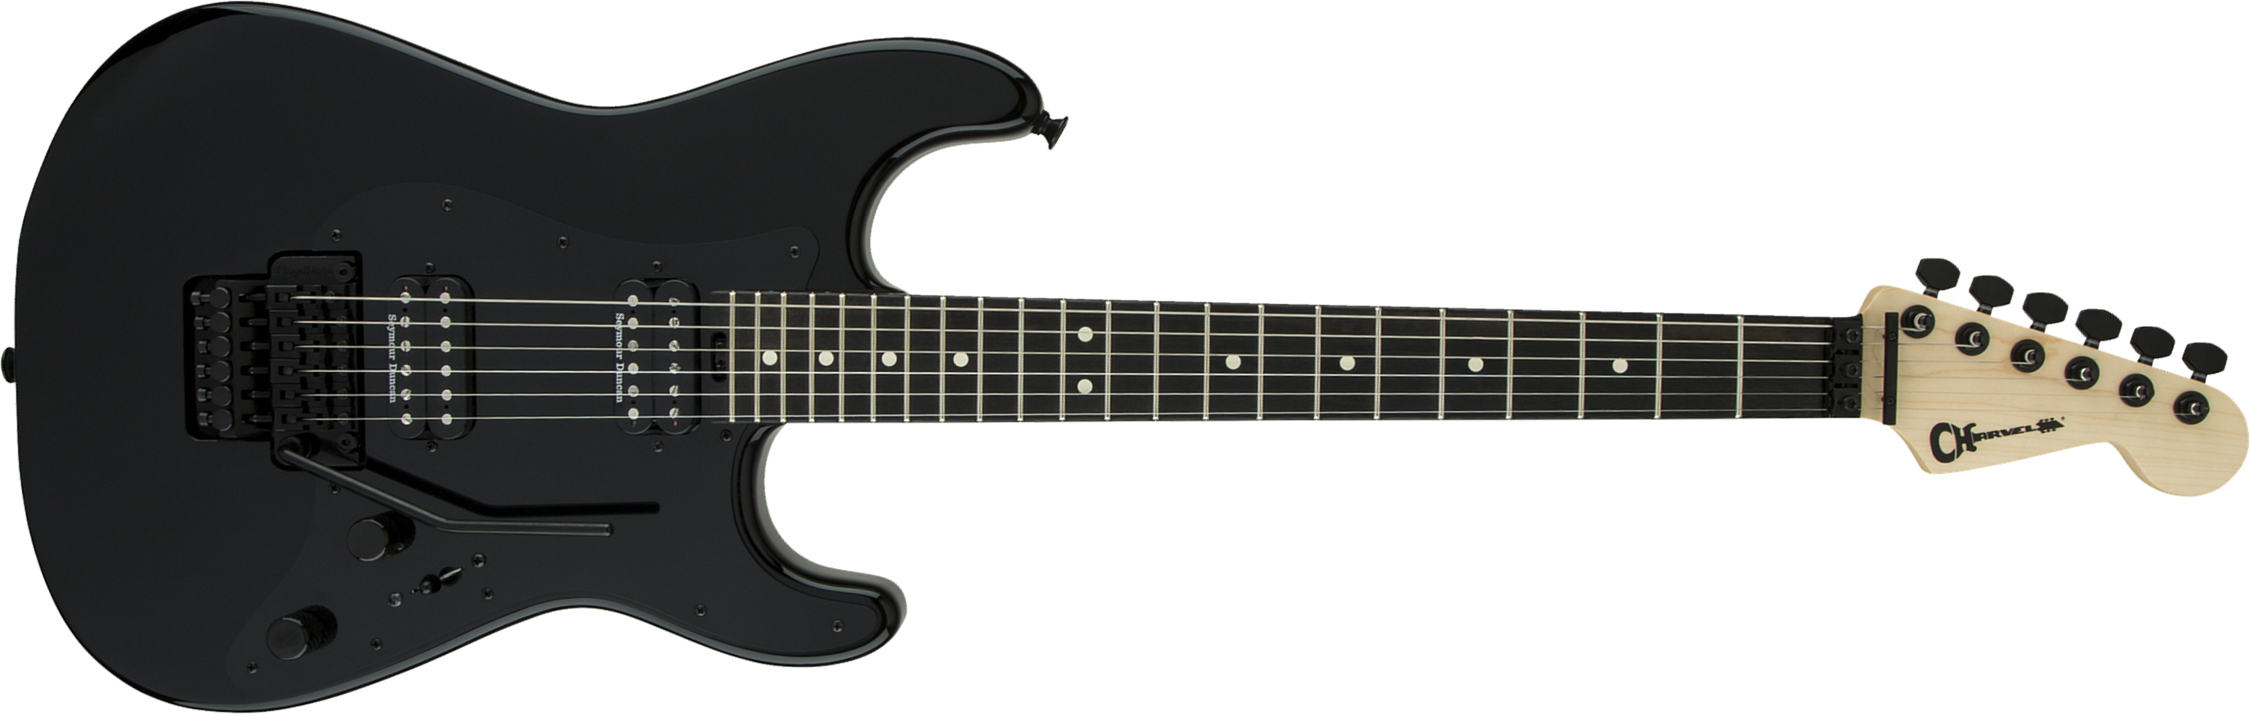 Charvel So-cal Style 1 Hh Fr E Pro-mod 2h Seymour Duncan Eb - Black - Guitare Électrique Forme Str - Main picture